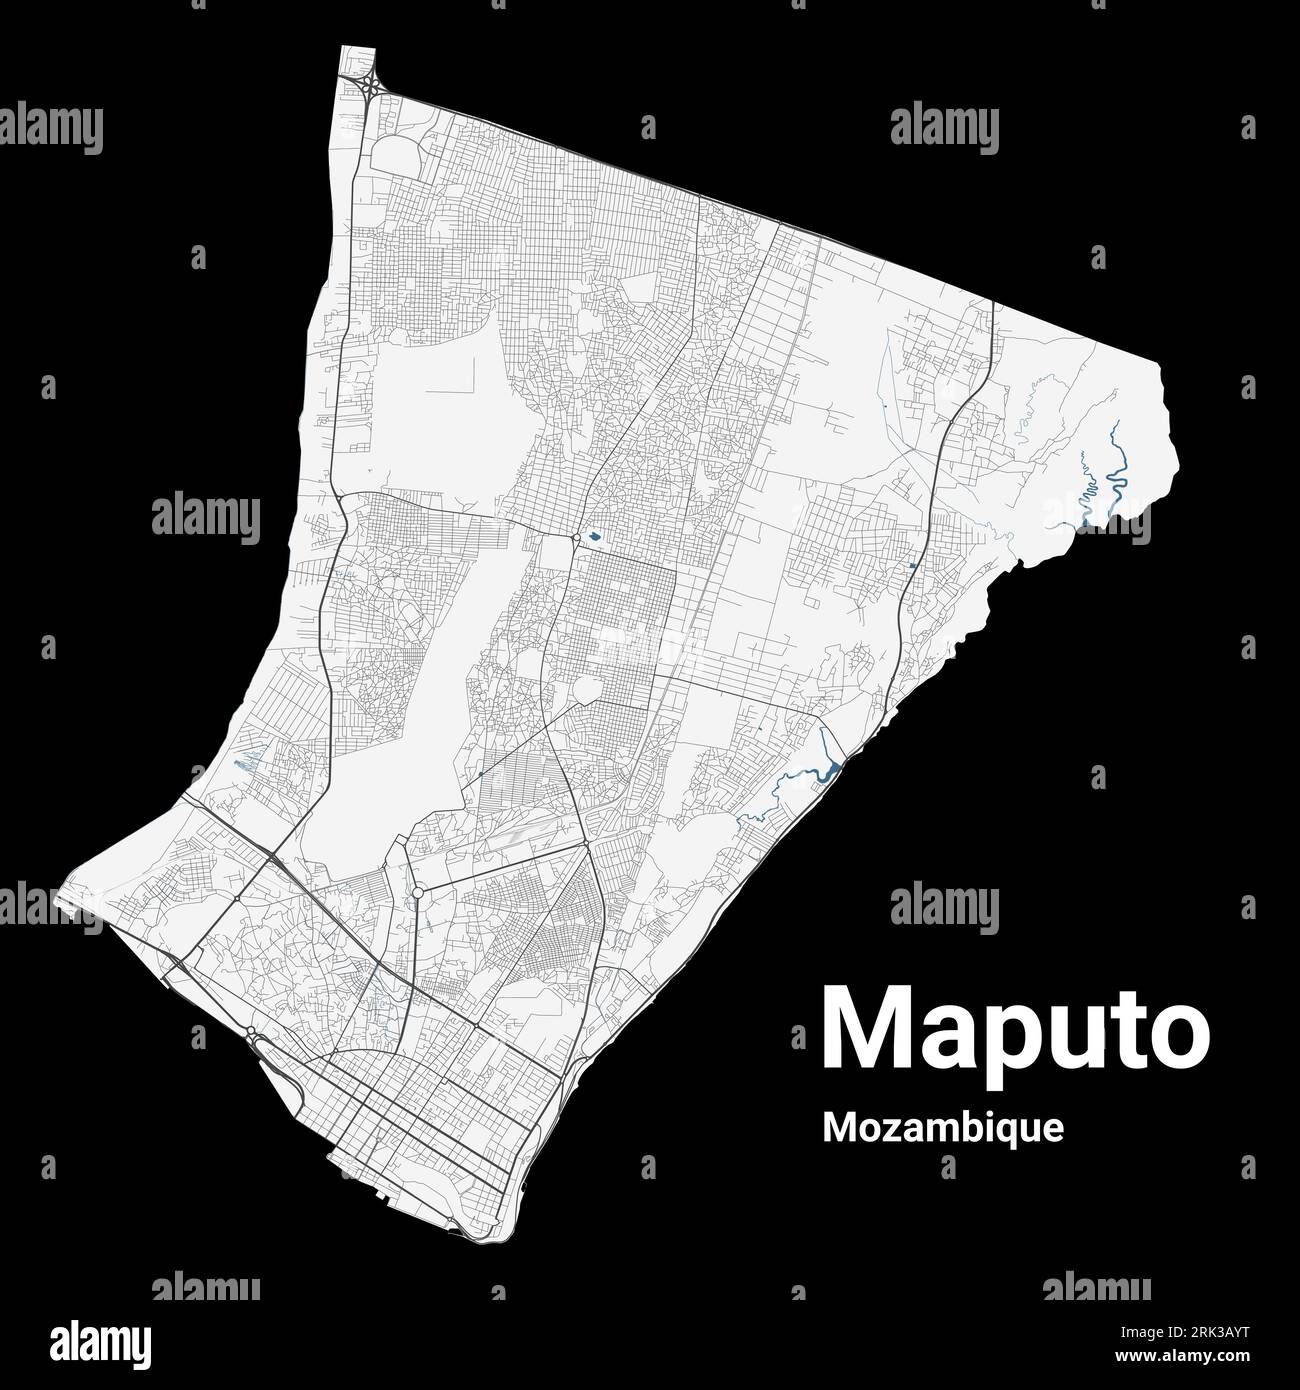 Maputo, mappa del Mozambico. Mappa dettagliata dell'area amministrativa della città di Maputo. Panorama urbano. Illustrazione vettoriale priva di royalty. Mappa stradale con autostrade, Illustrazione Vettoriale